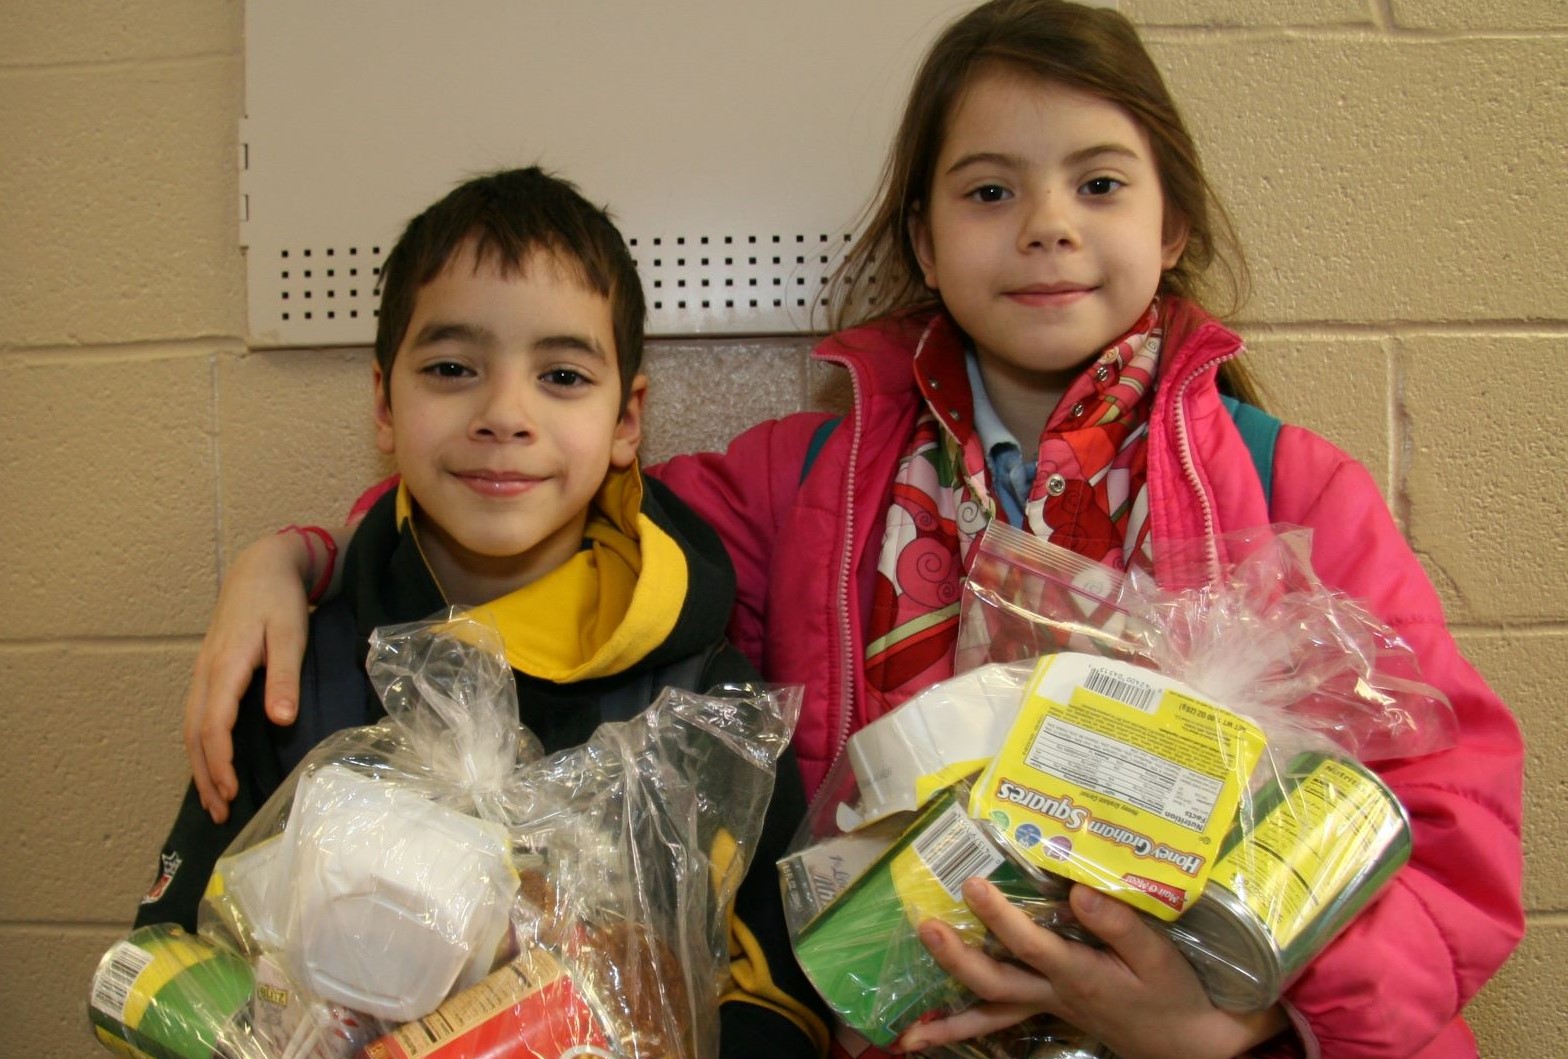 Kids receiving backpacks full of food